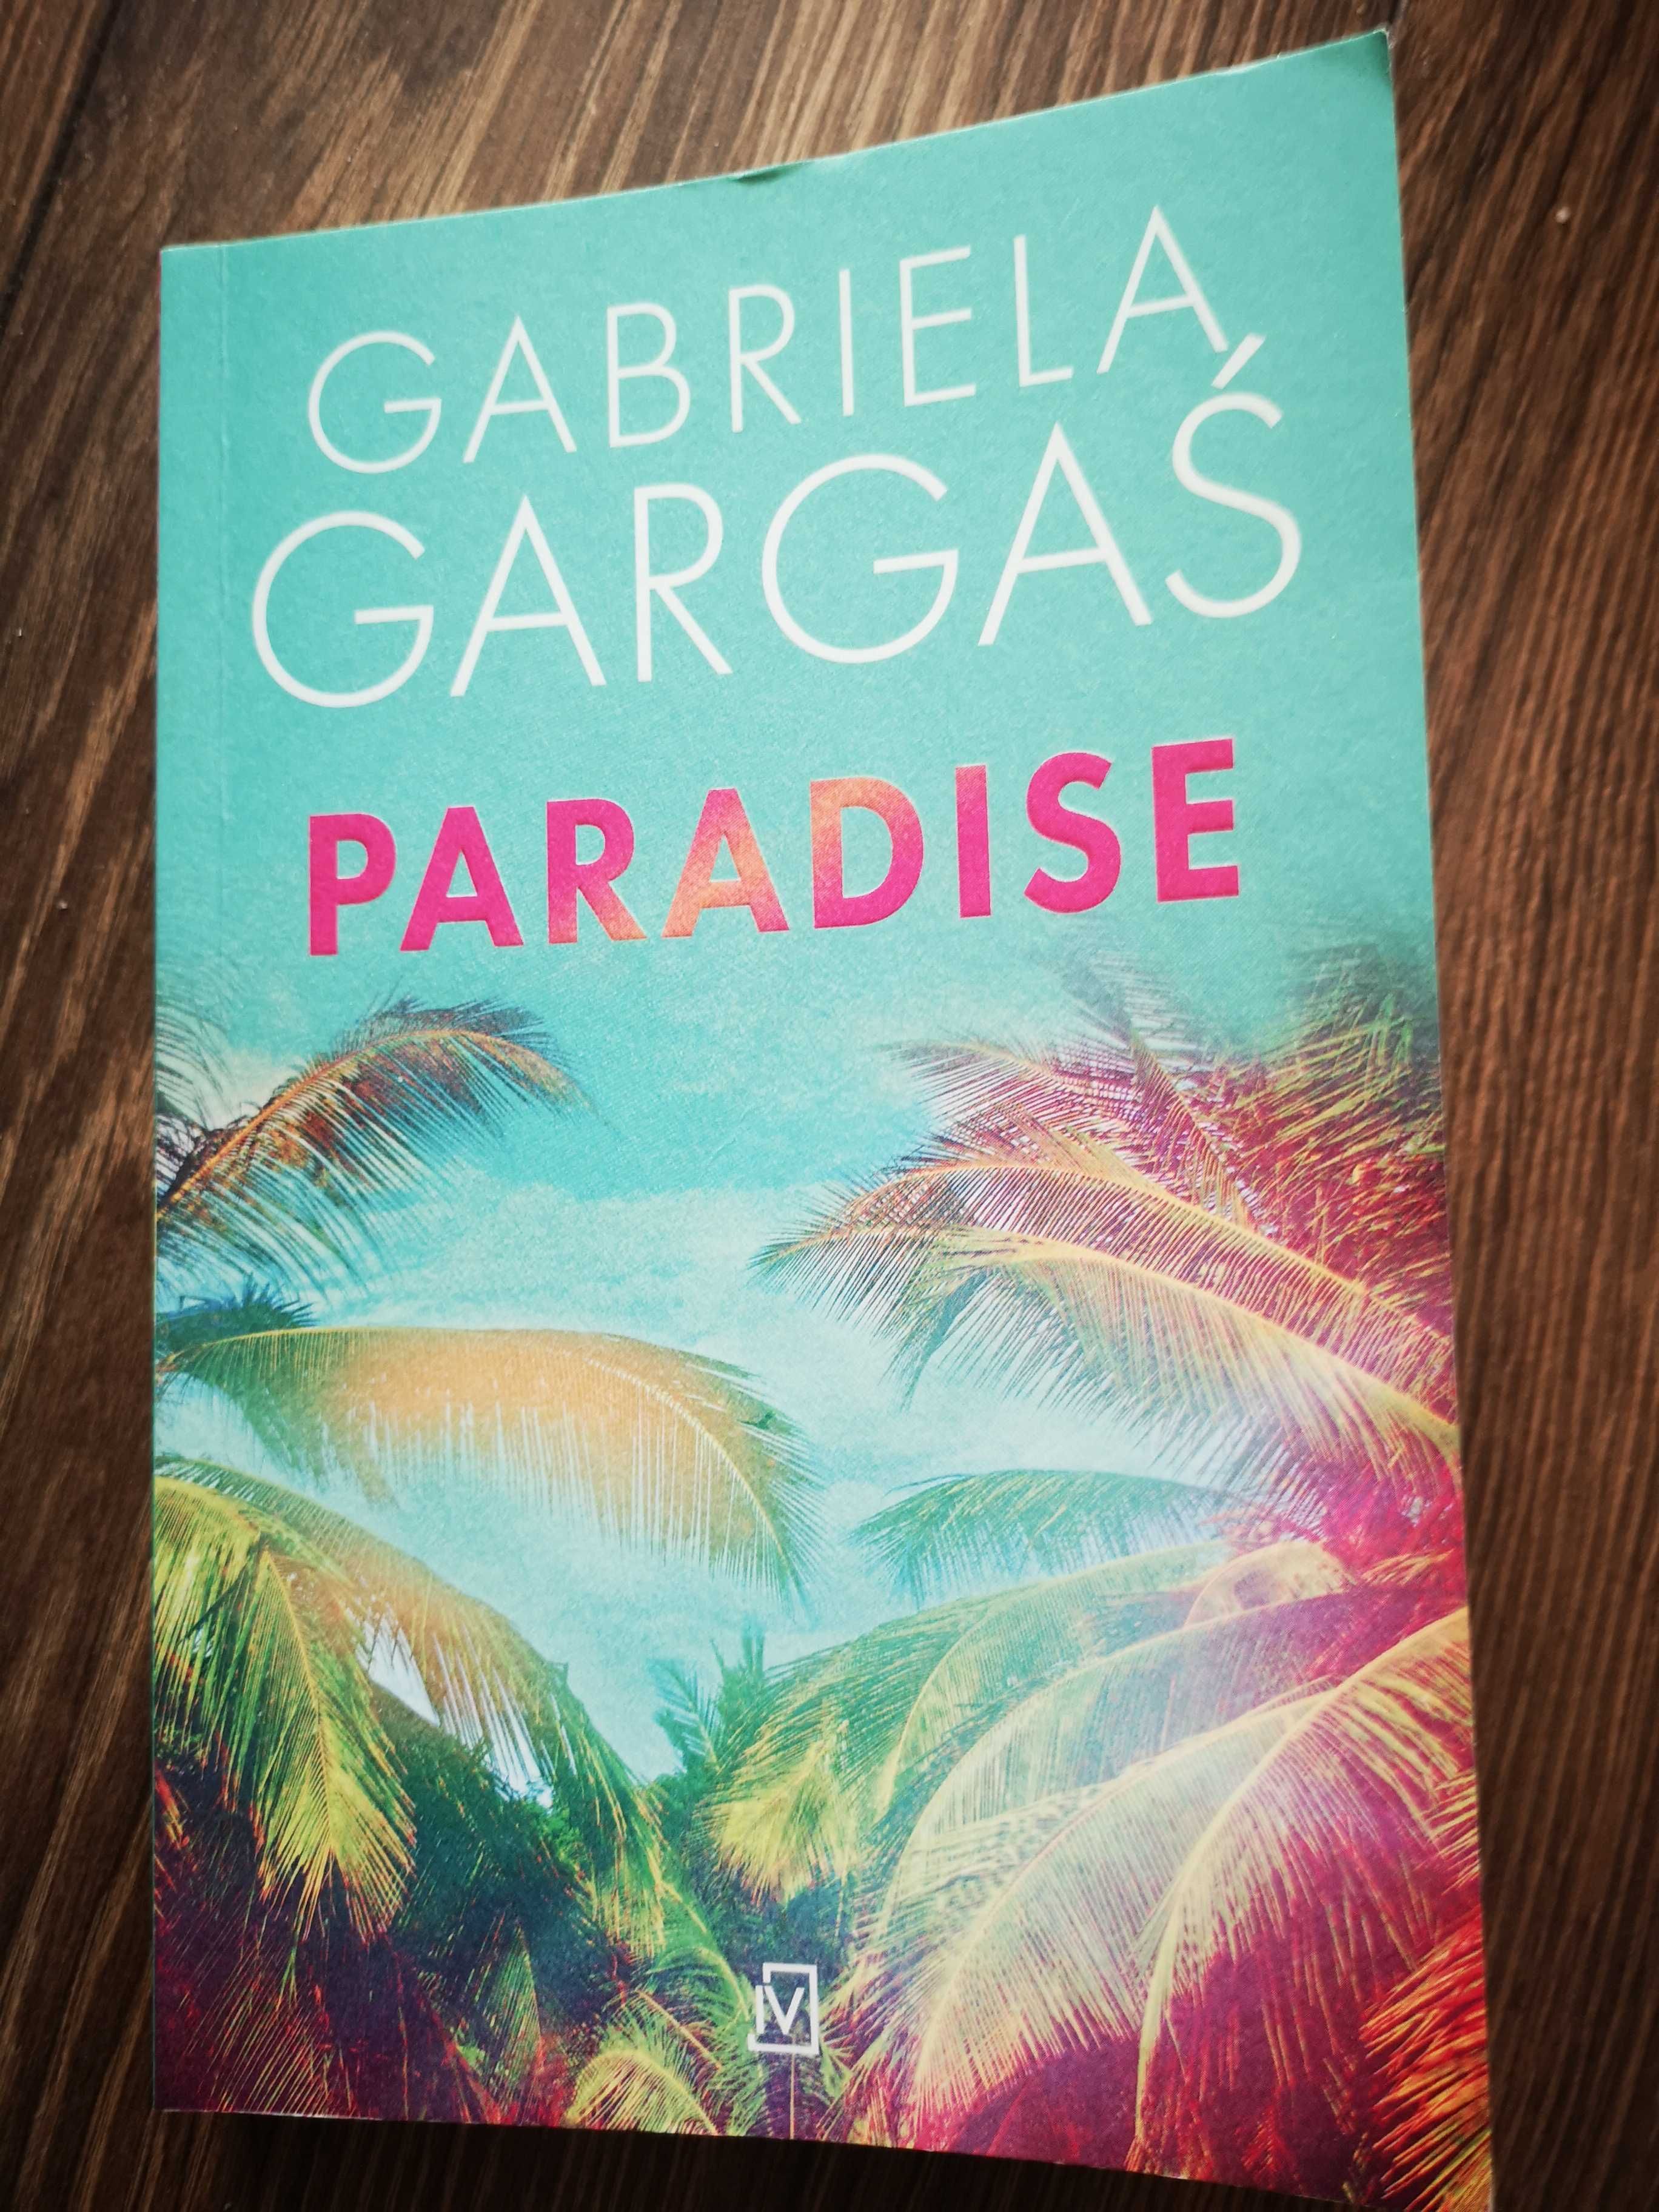 Gabriela Gargas Paradise